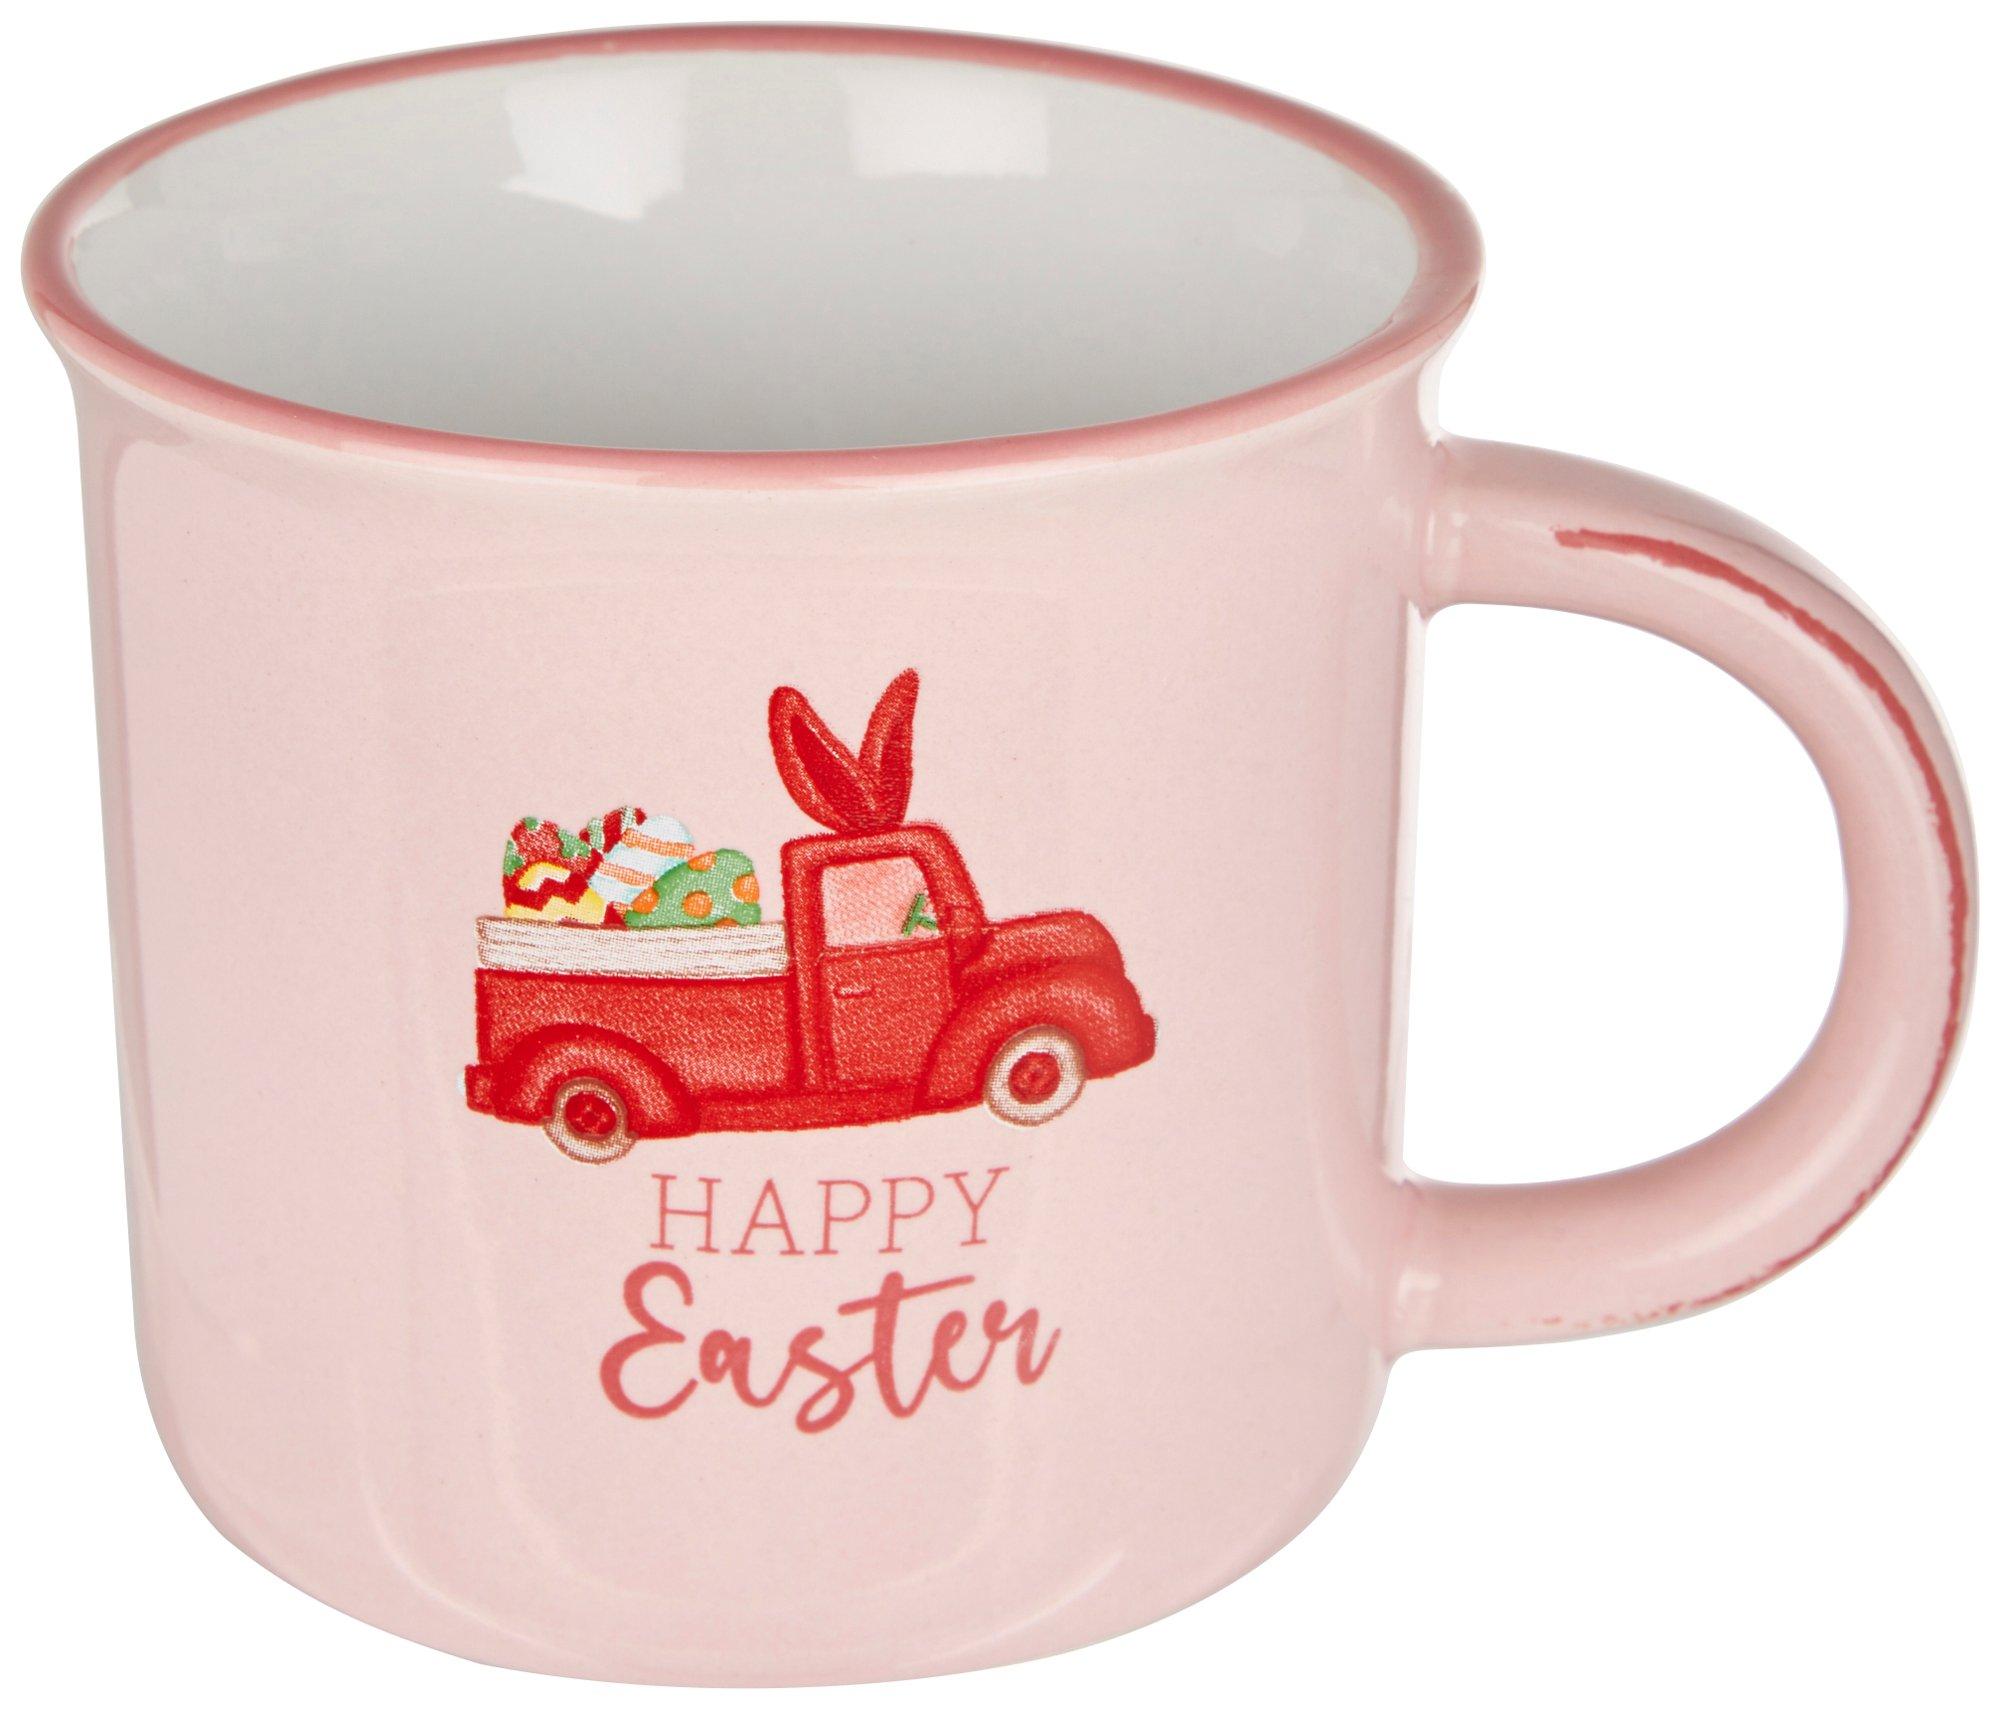 Home Essentials 16 Oz Happy Easter Mug